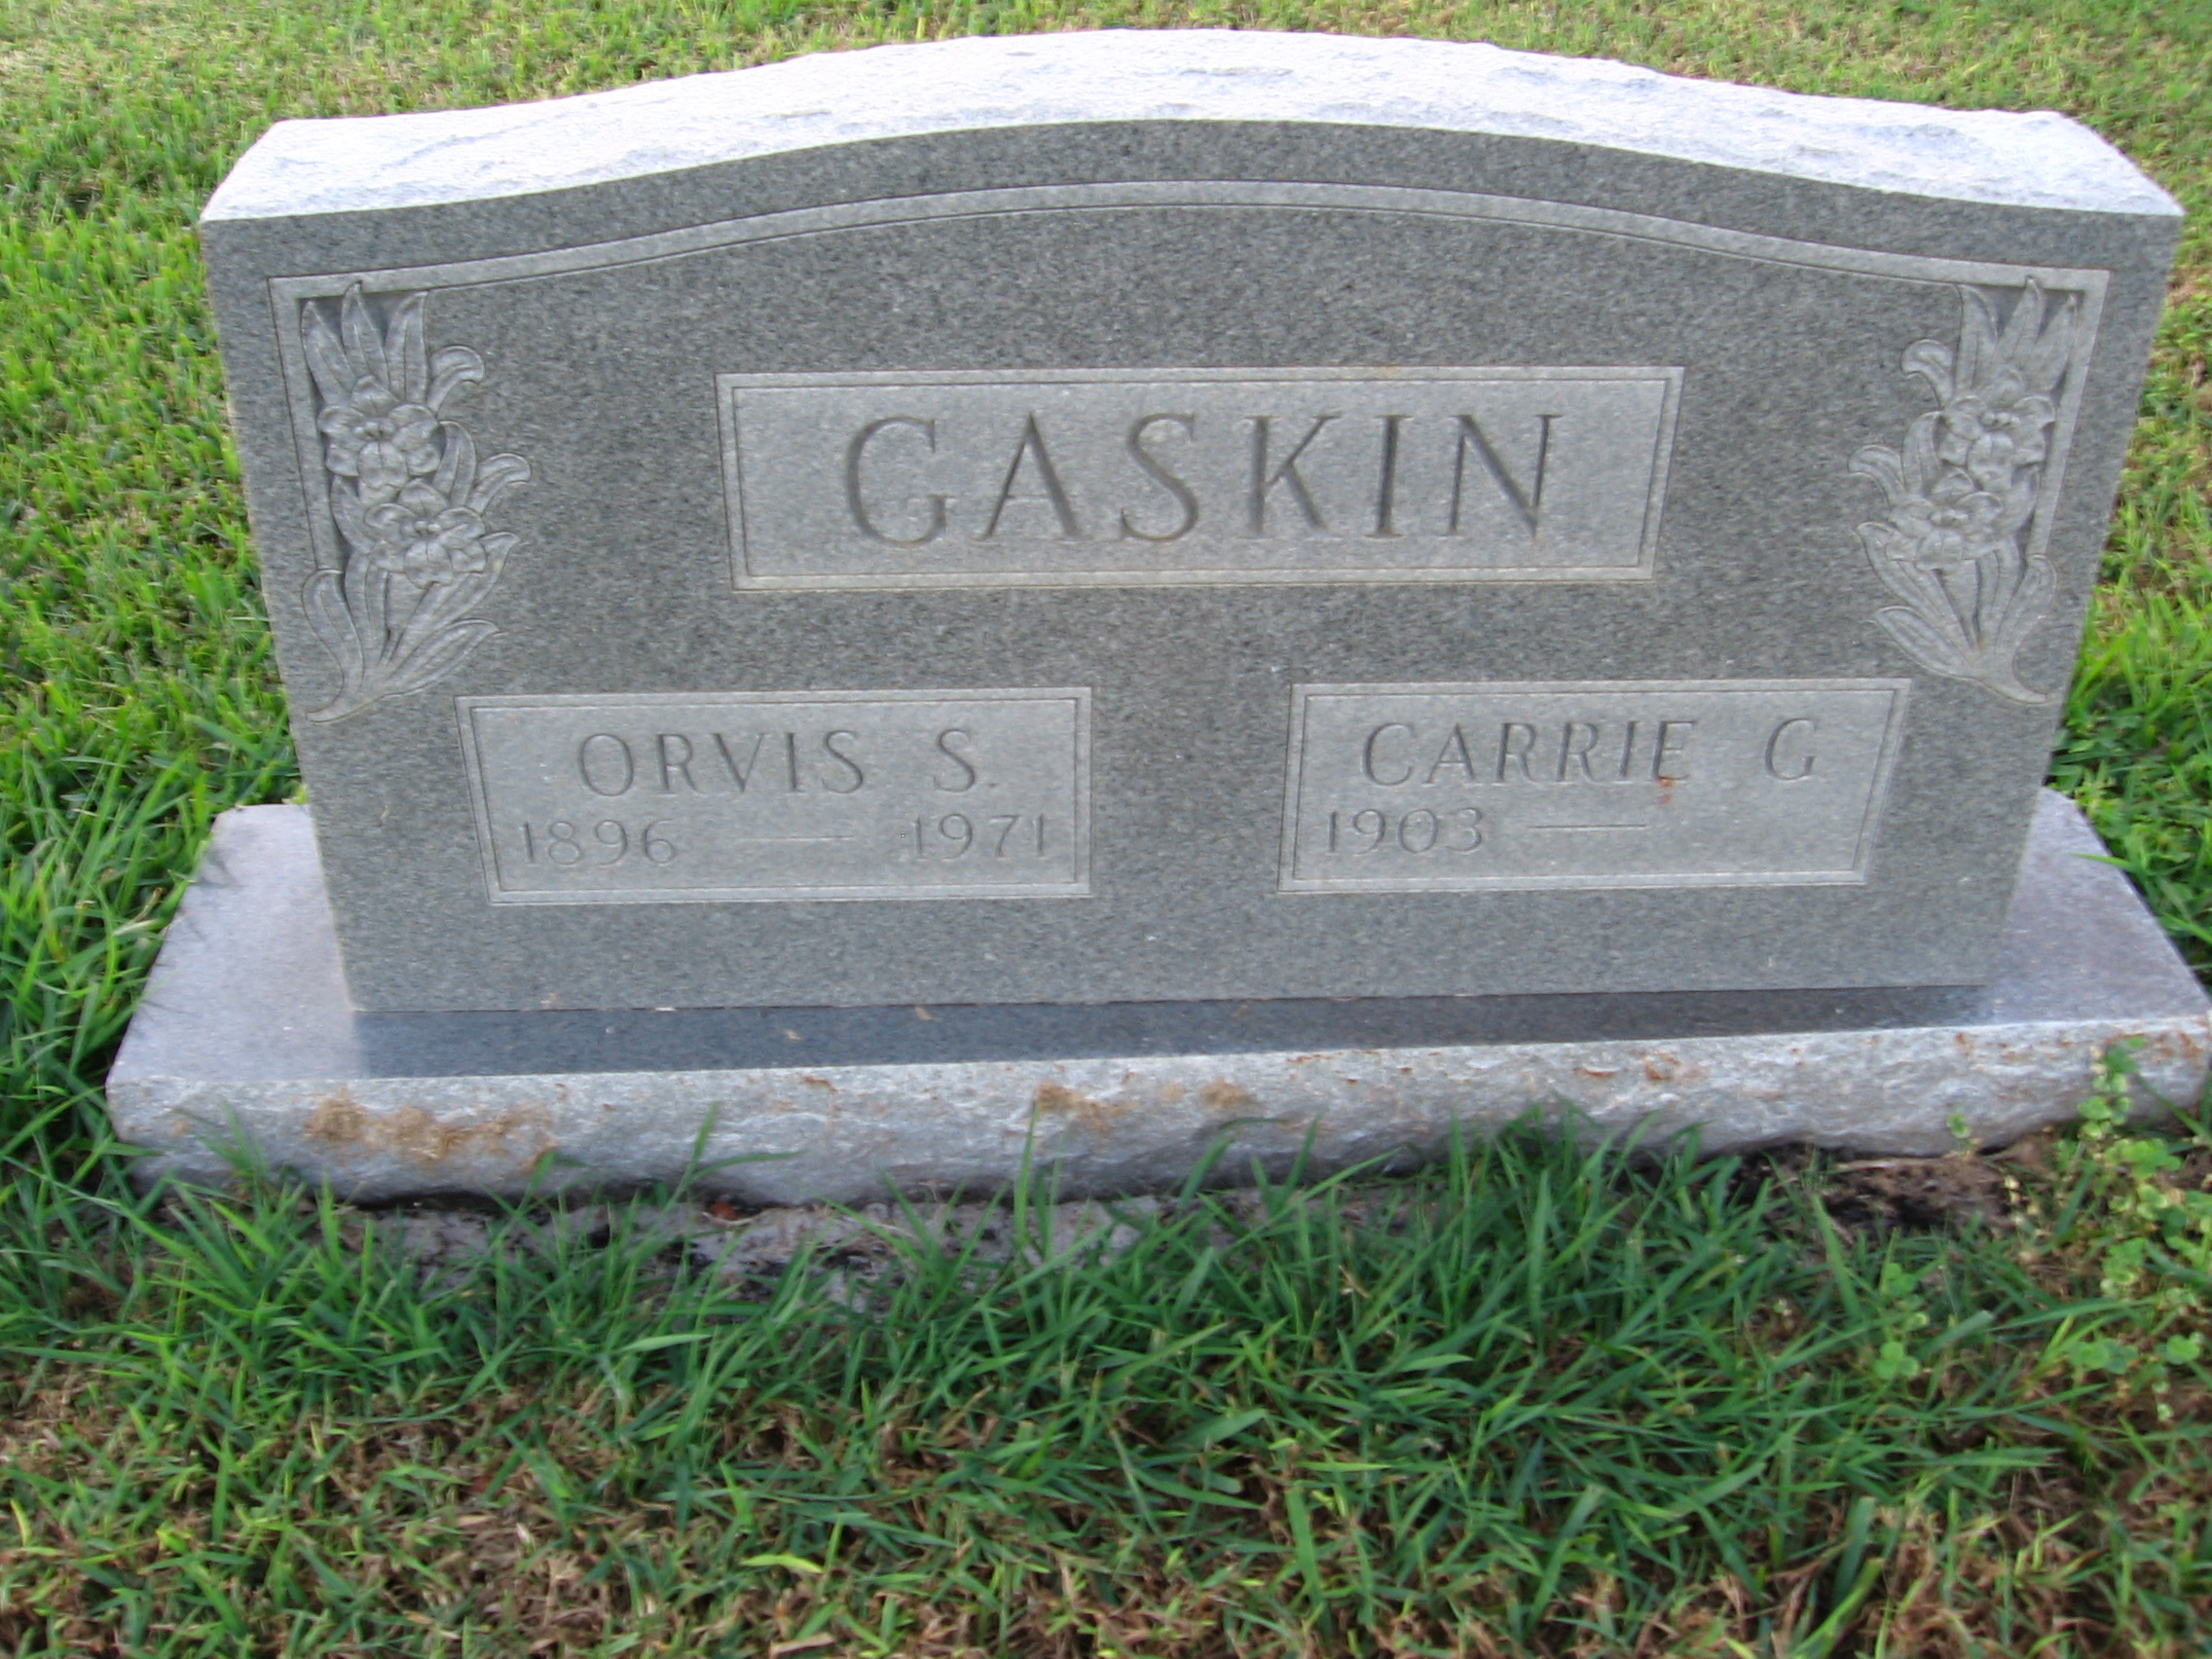 Orvis S Gaskin